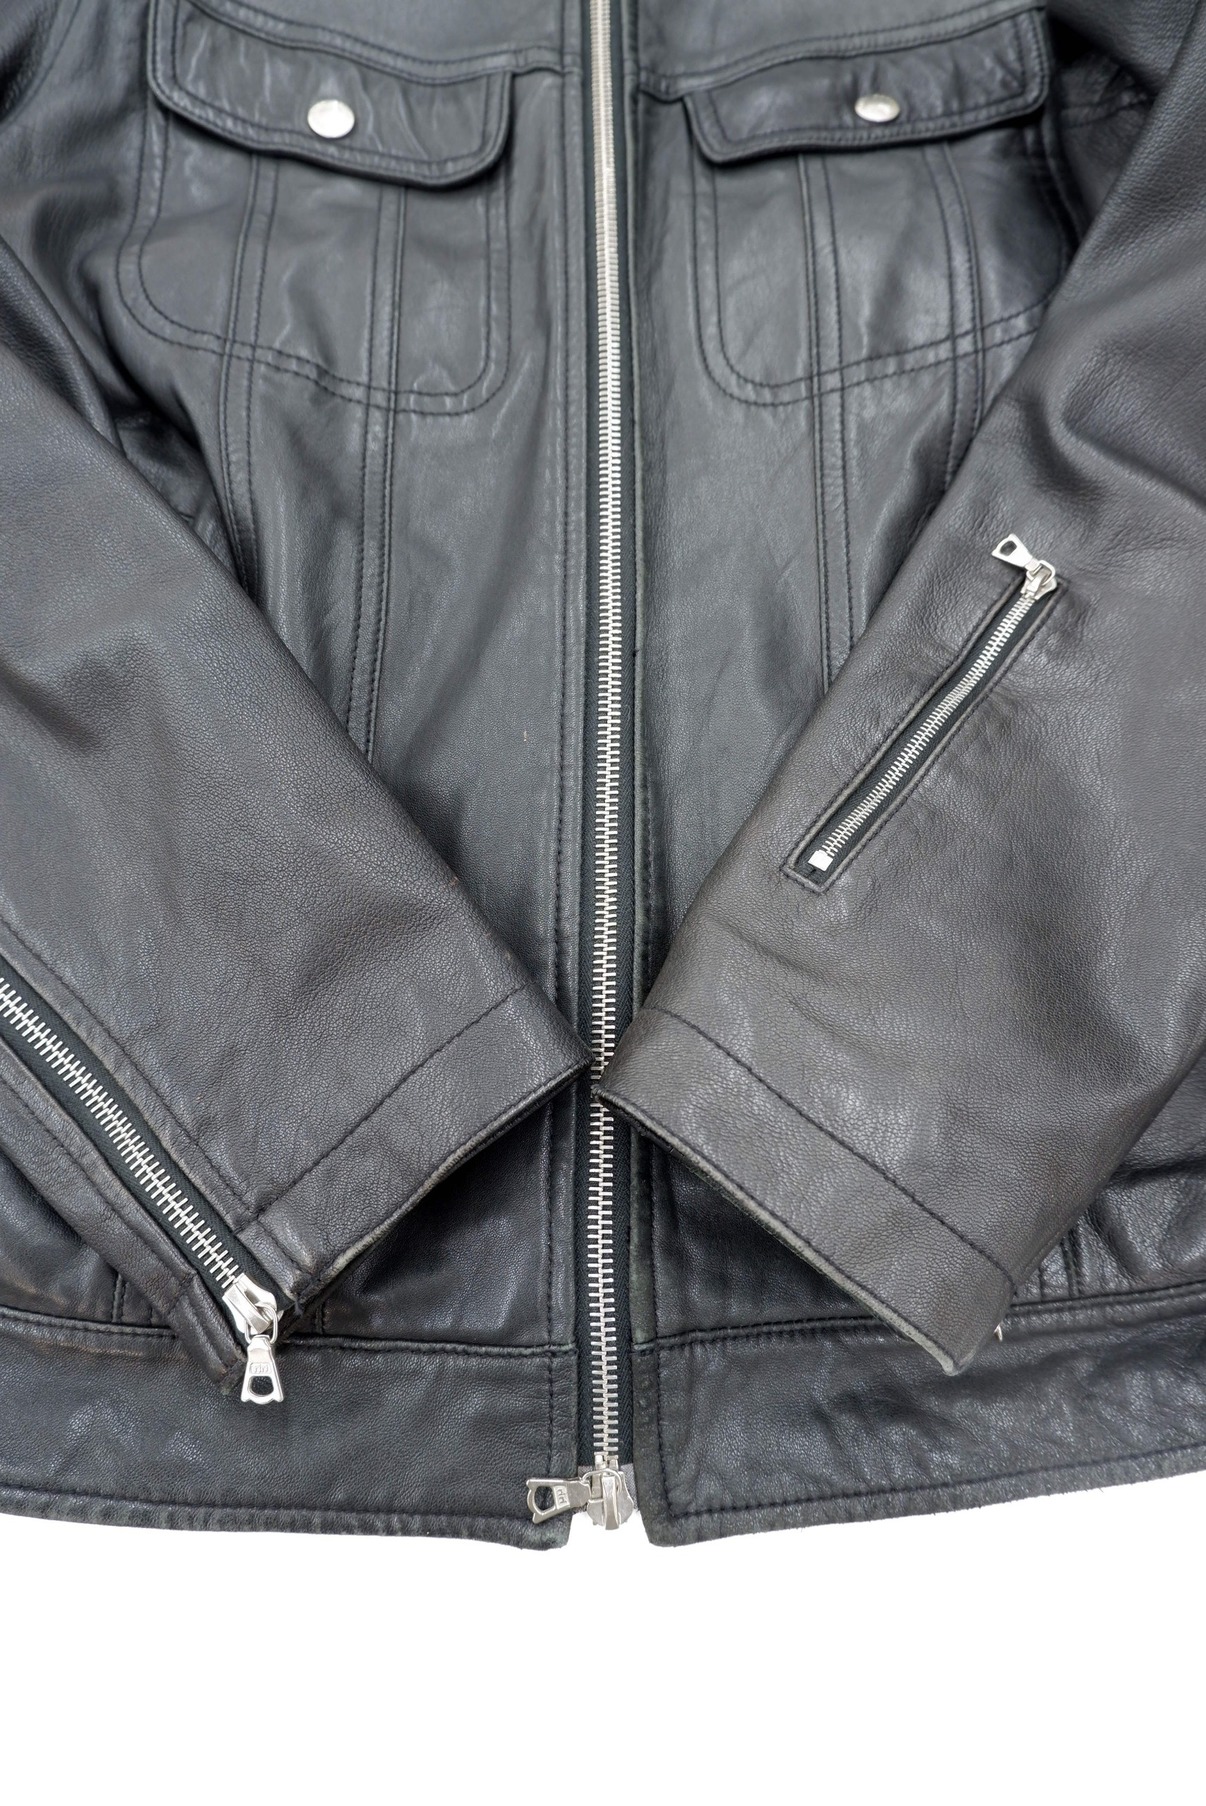 SOPHNET. (ソフネット) ラムレザーライダースジャケット ブラック サイズ:M